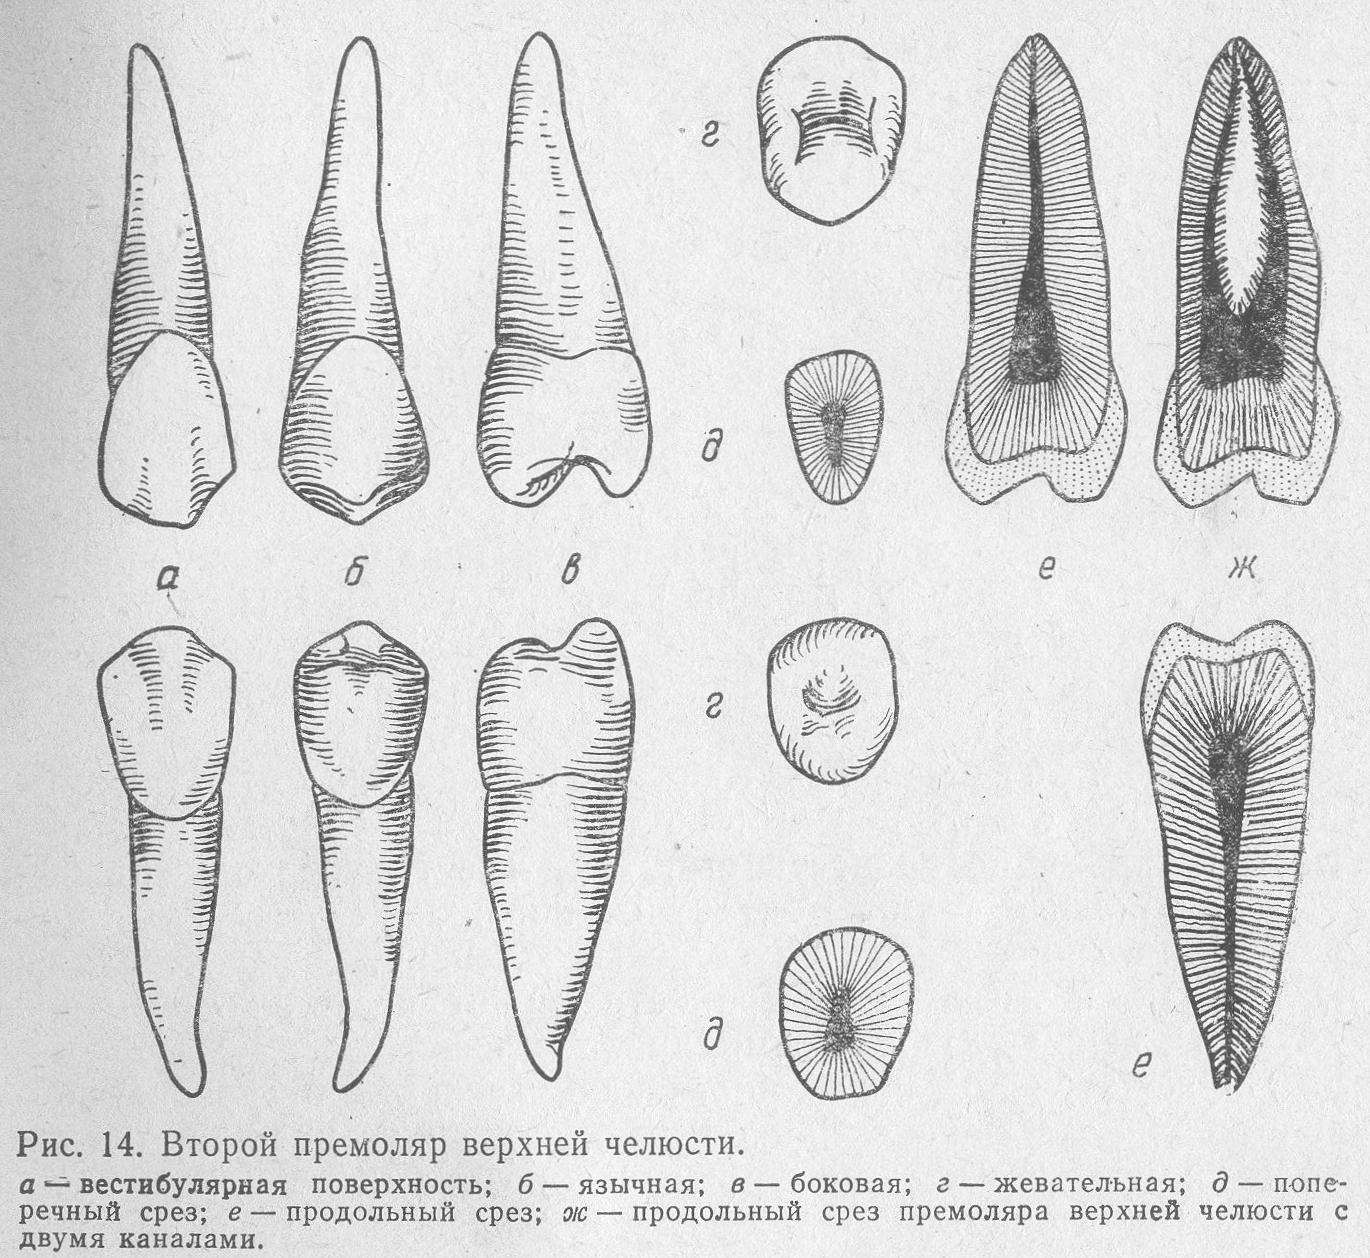 Зуб 1.4. Второй премоляр нижней челюсти анатомия. Второй премоляр верхней челюсти анатомия. Первый и второй премоляр нижней челюсти. Зуб Нижний первый премоляр анатомия.